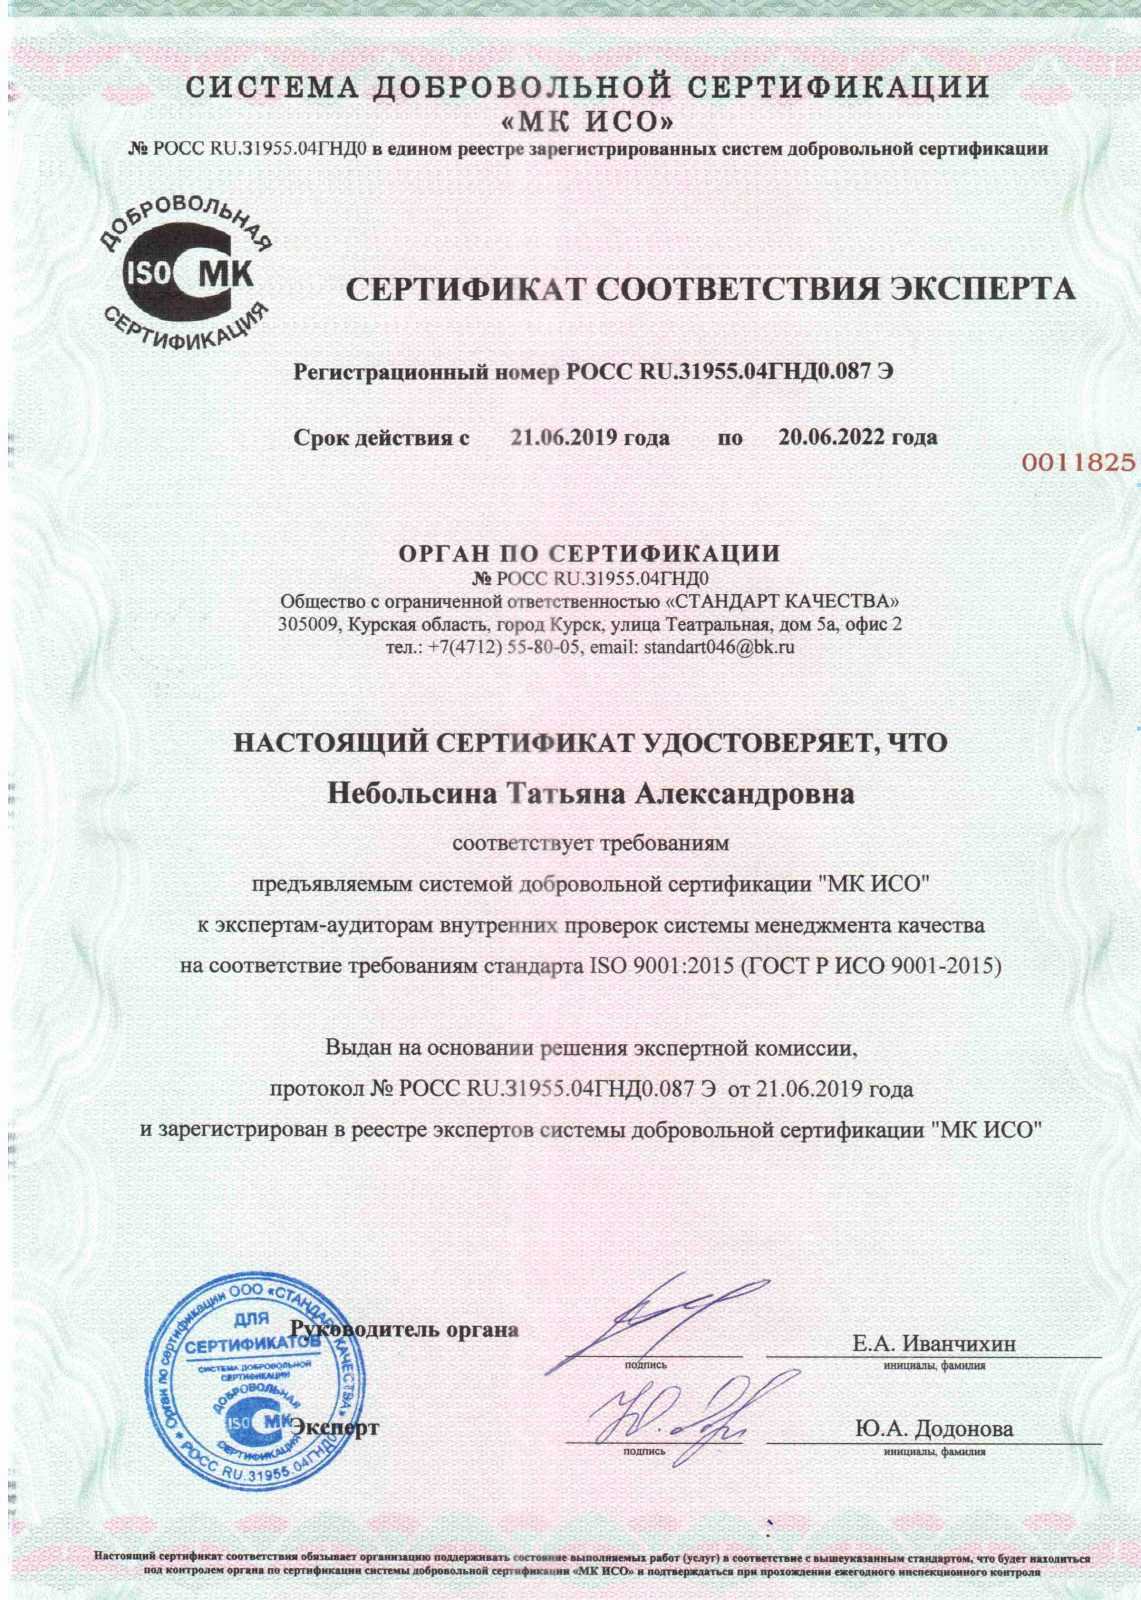 сертификат менеджмента качества ГОСТ ISO 9001:2015